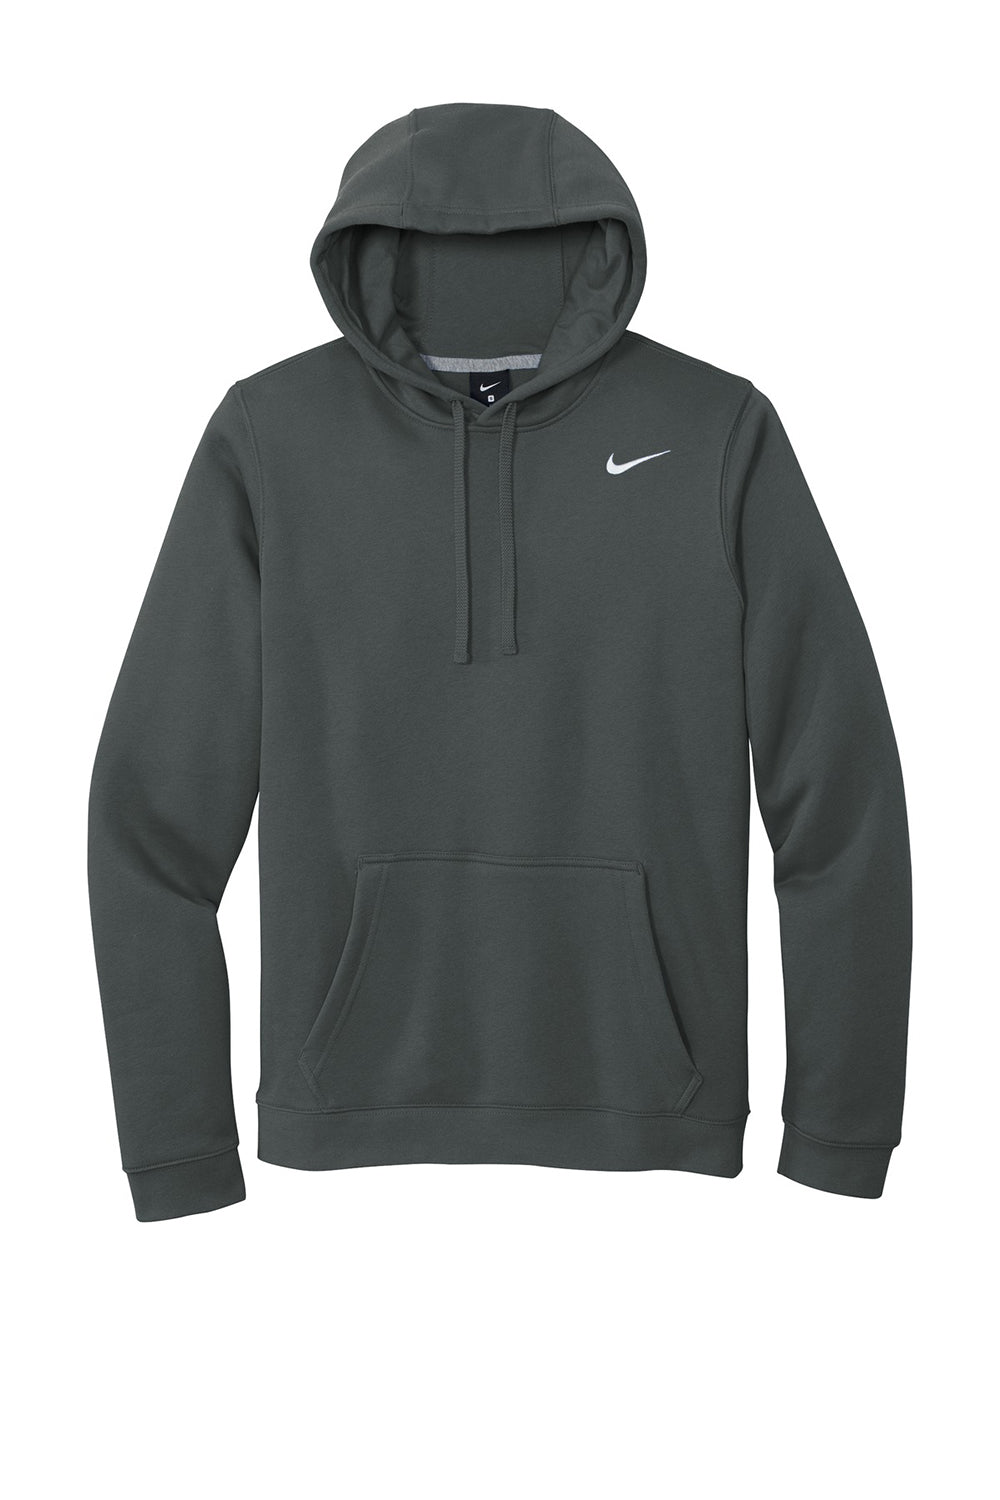 Nike CJ1611 Mens Club Fleece Hooded Sweatshirt Hoodie Anthracite Grey Flat Front